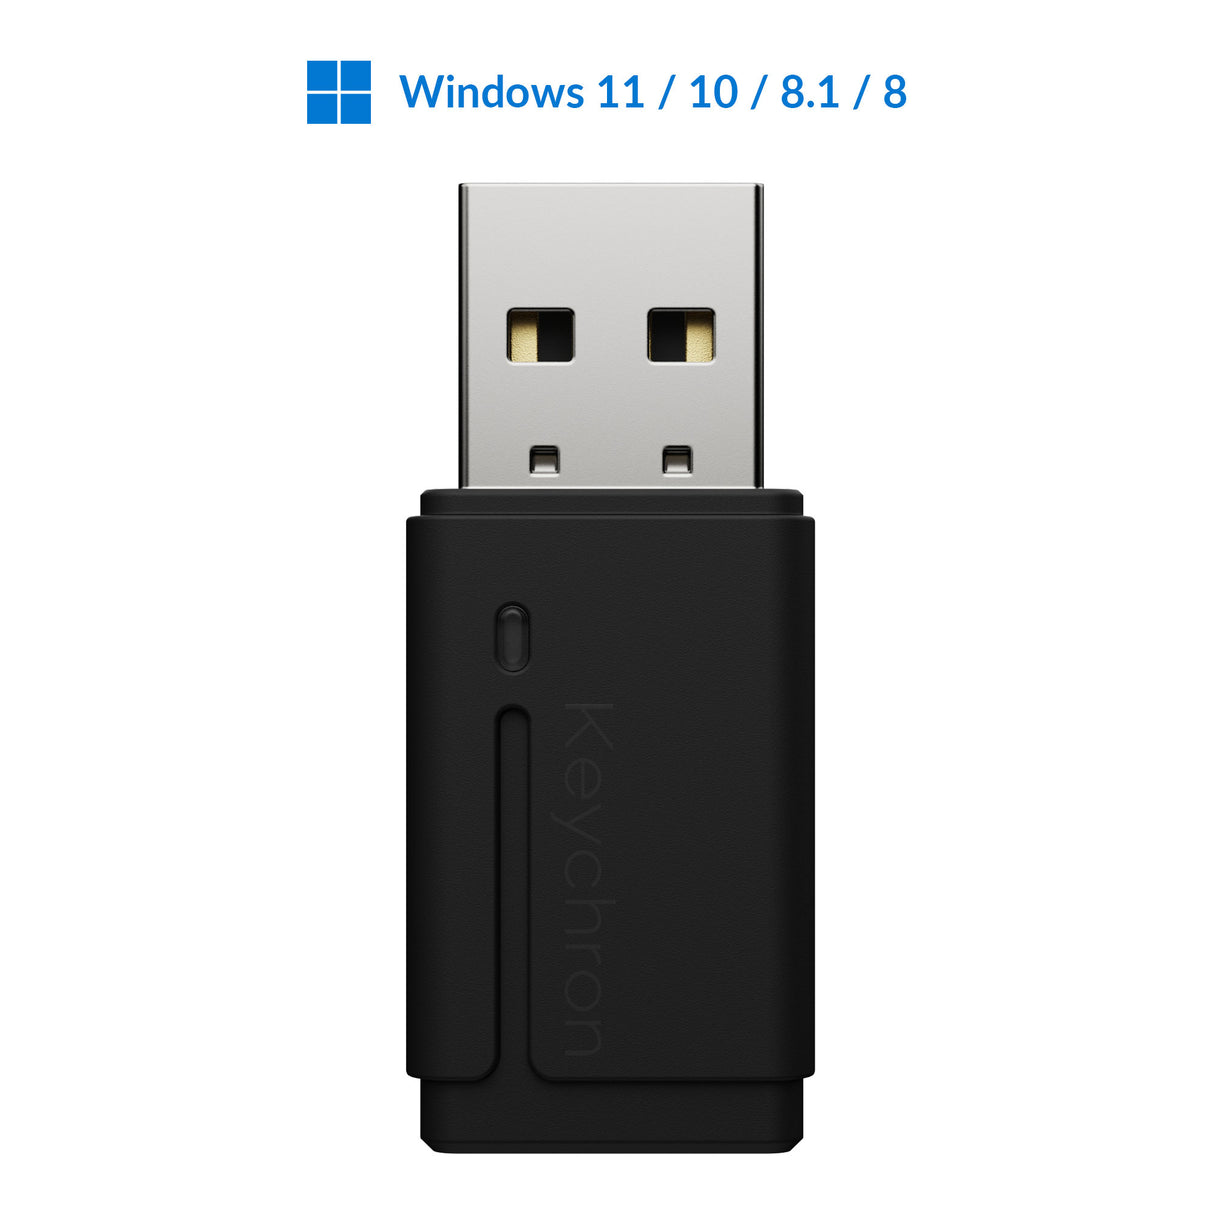 https://www.keychron.com/cdn/shop/products/Keychron-USB-Bluetooth-Adapter-for-Windows-11-10-8-PC.jpg?v=1669103019&width=1214